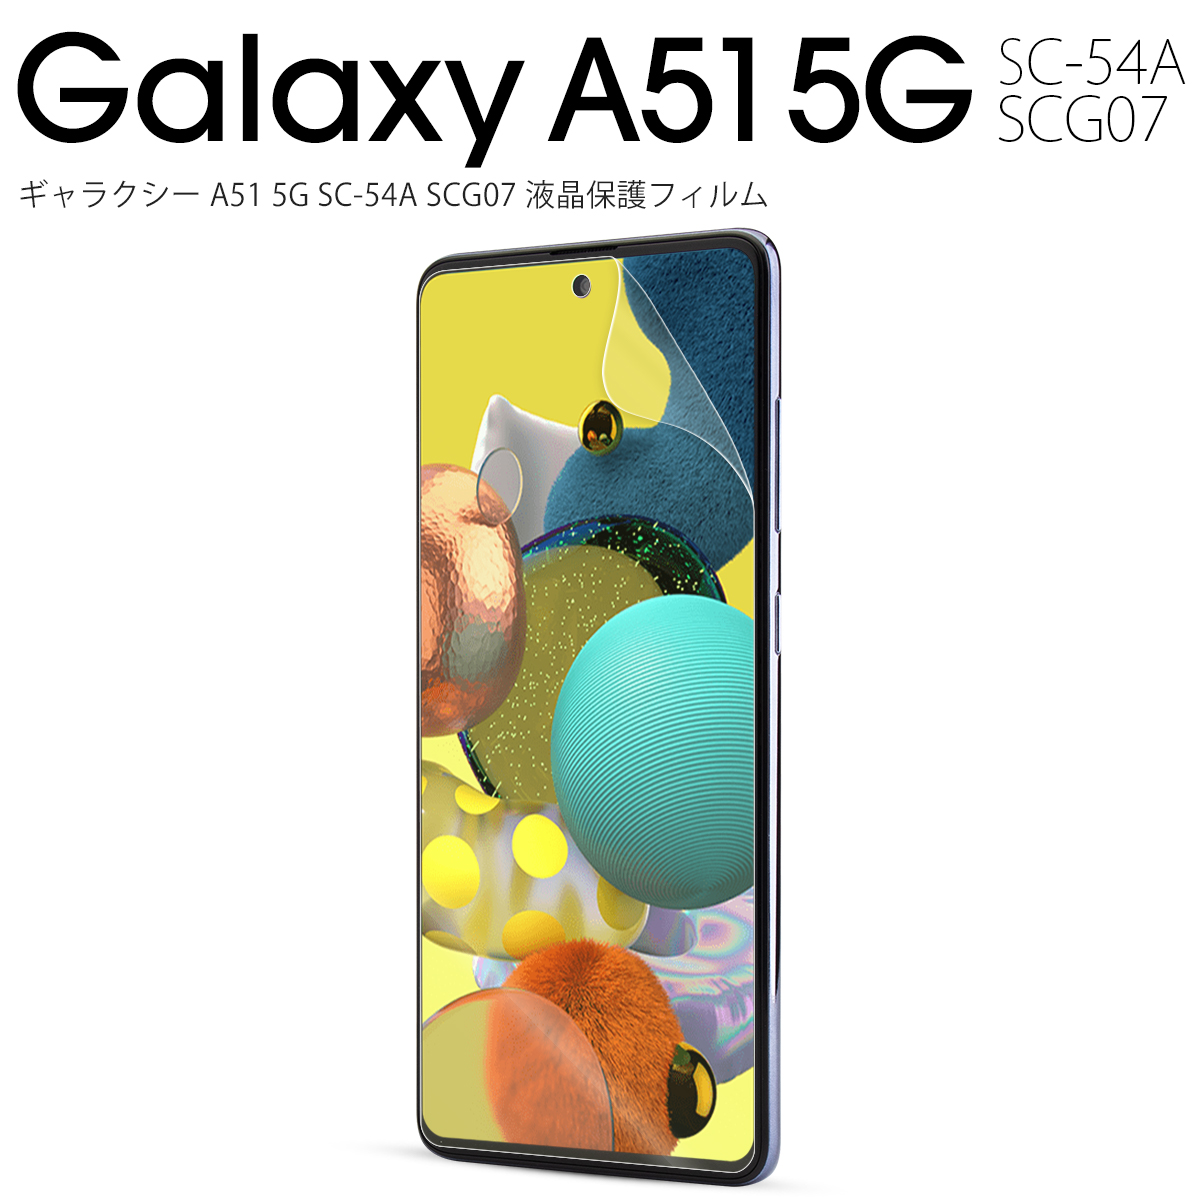 Galaxy A51 5G SCG07 液晶保護フィルム